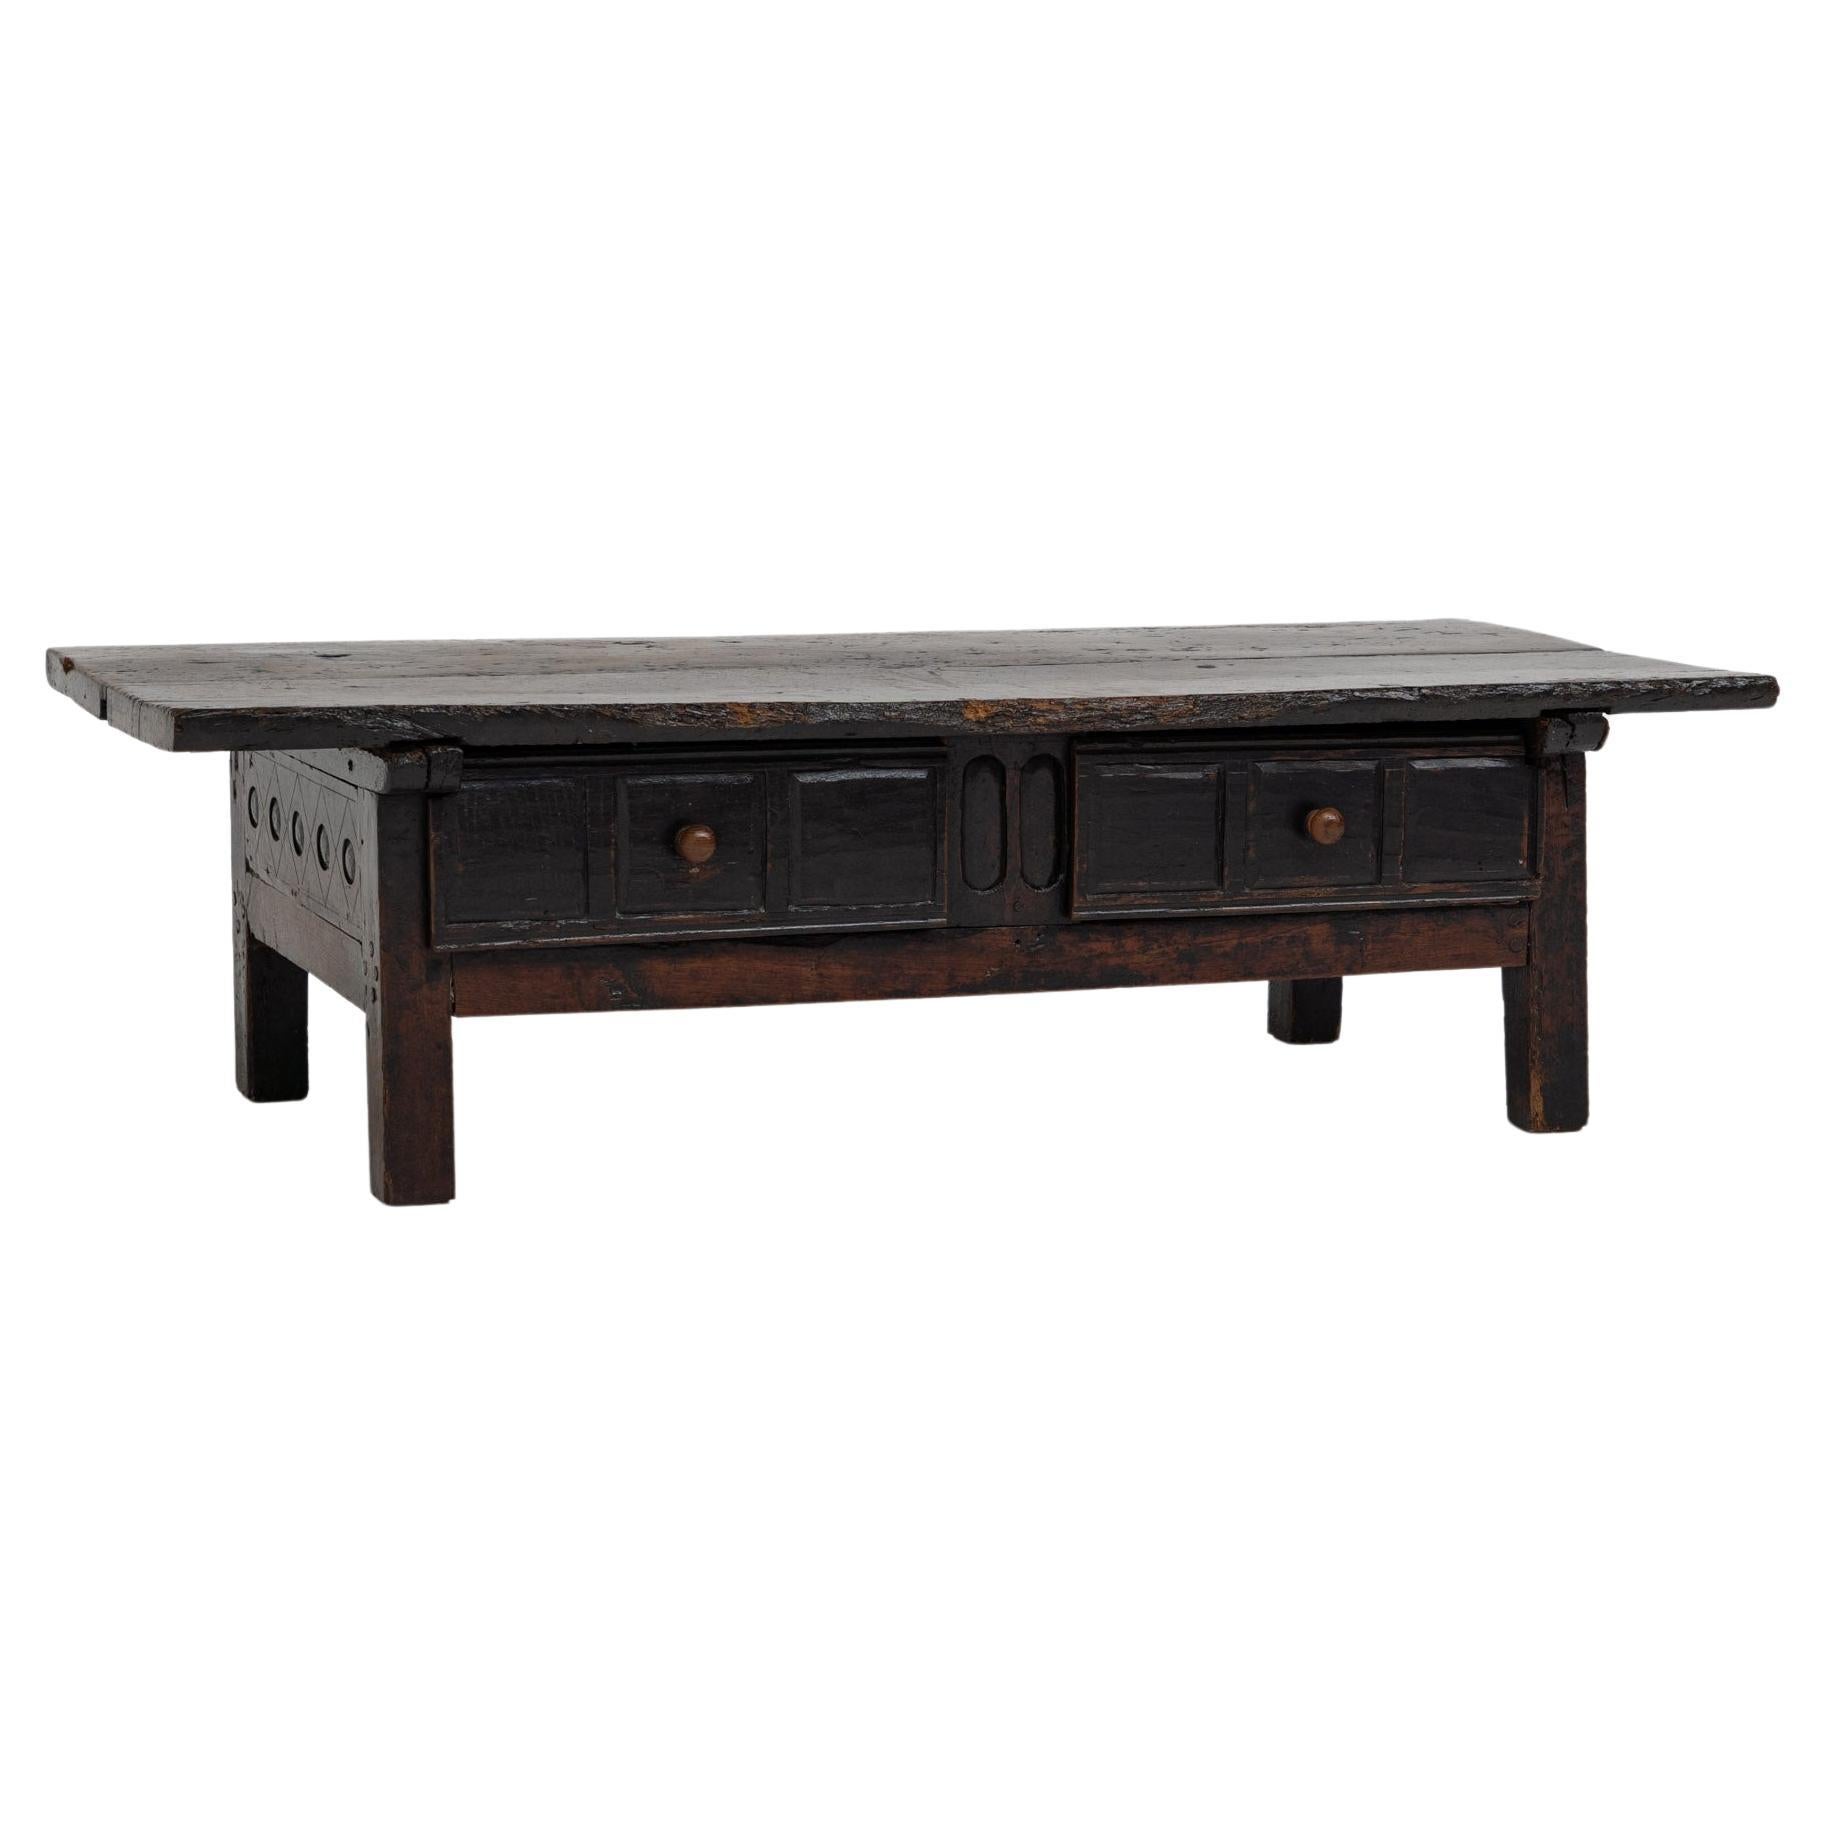 Antigua mesa baja rústica española del siglo XVIII